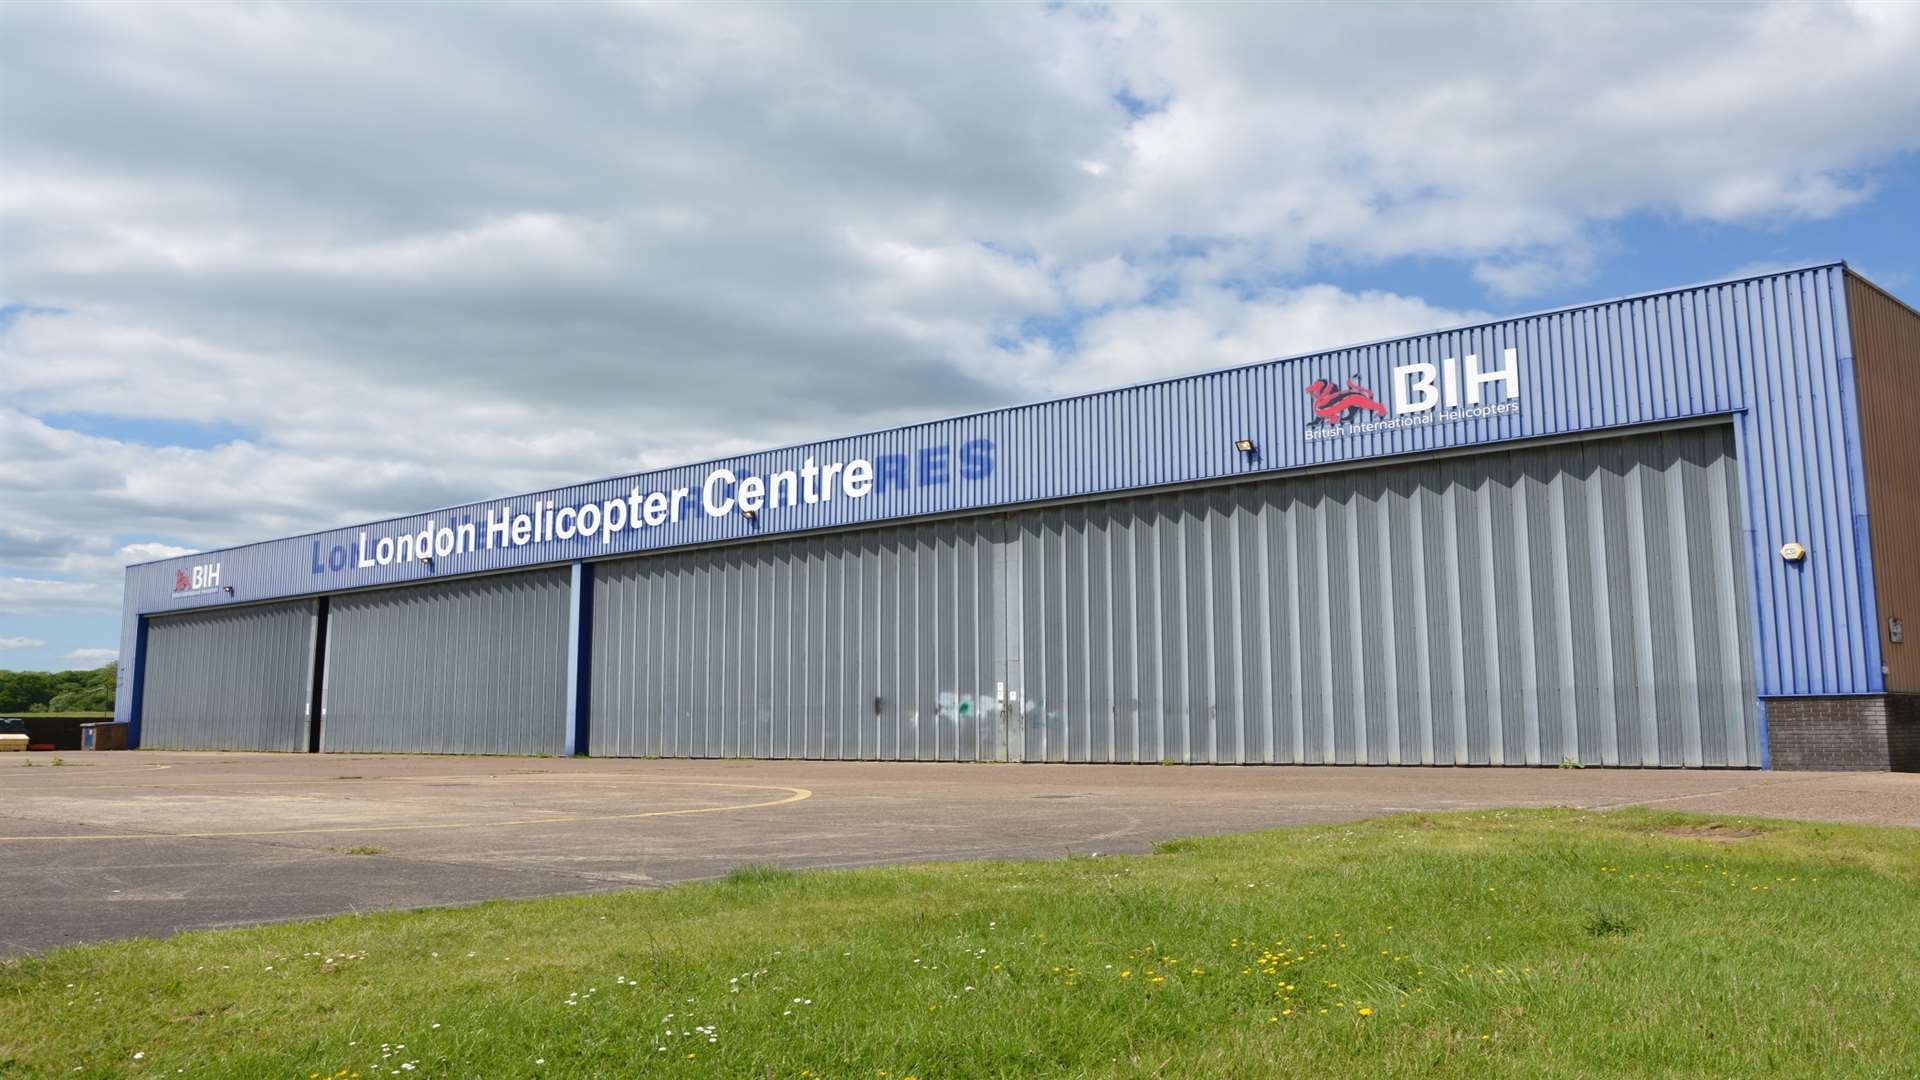 The Hangar 10 base at Redhill